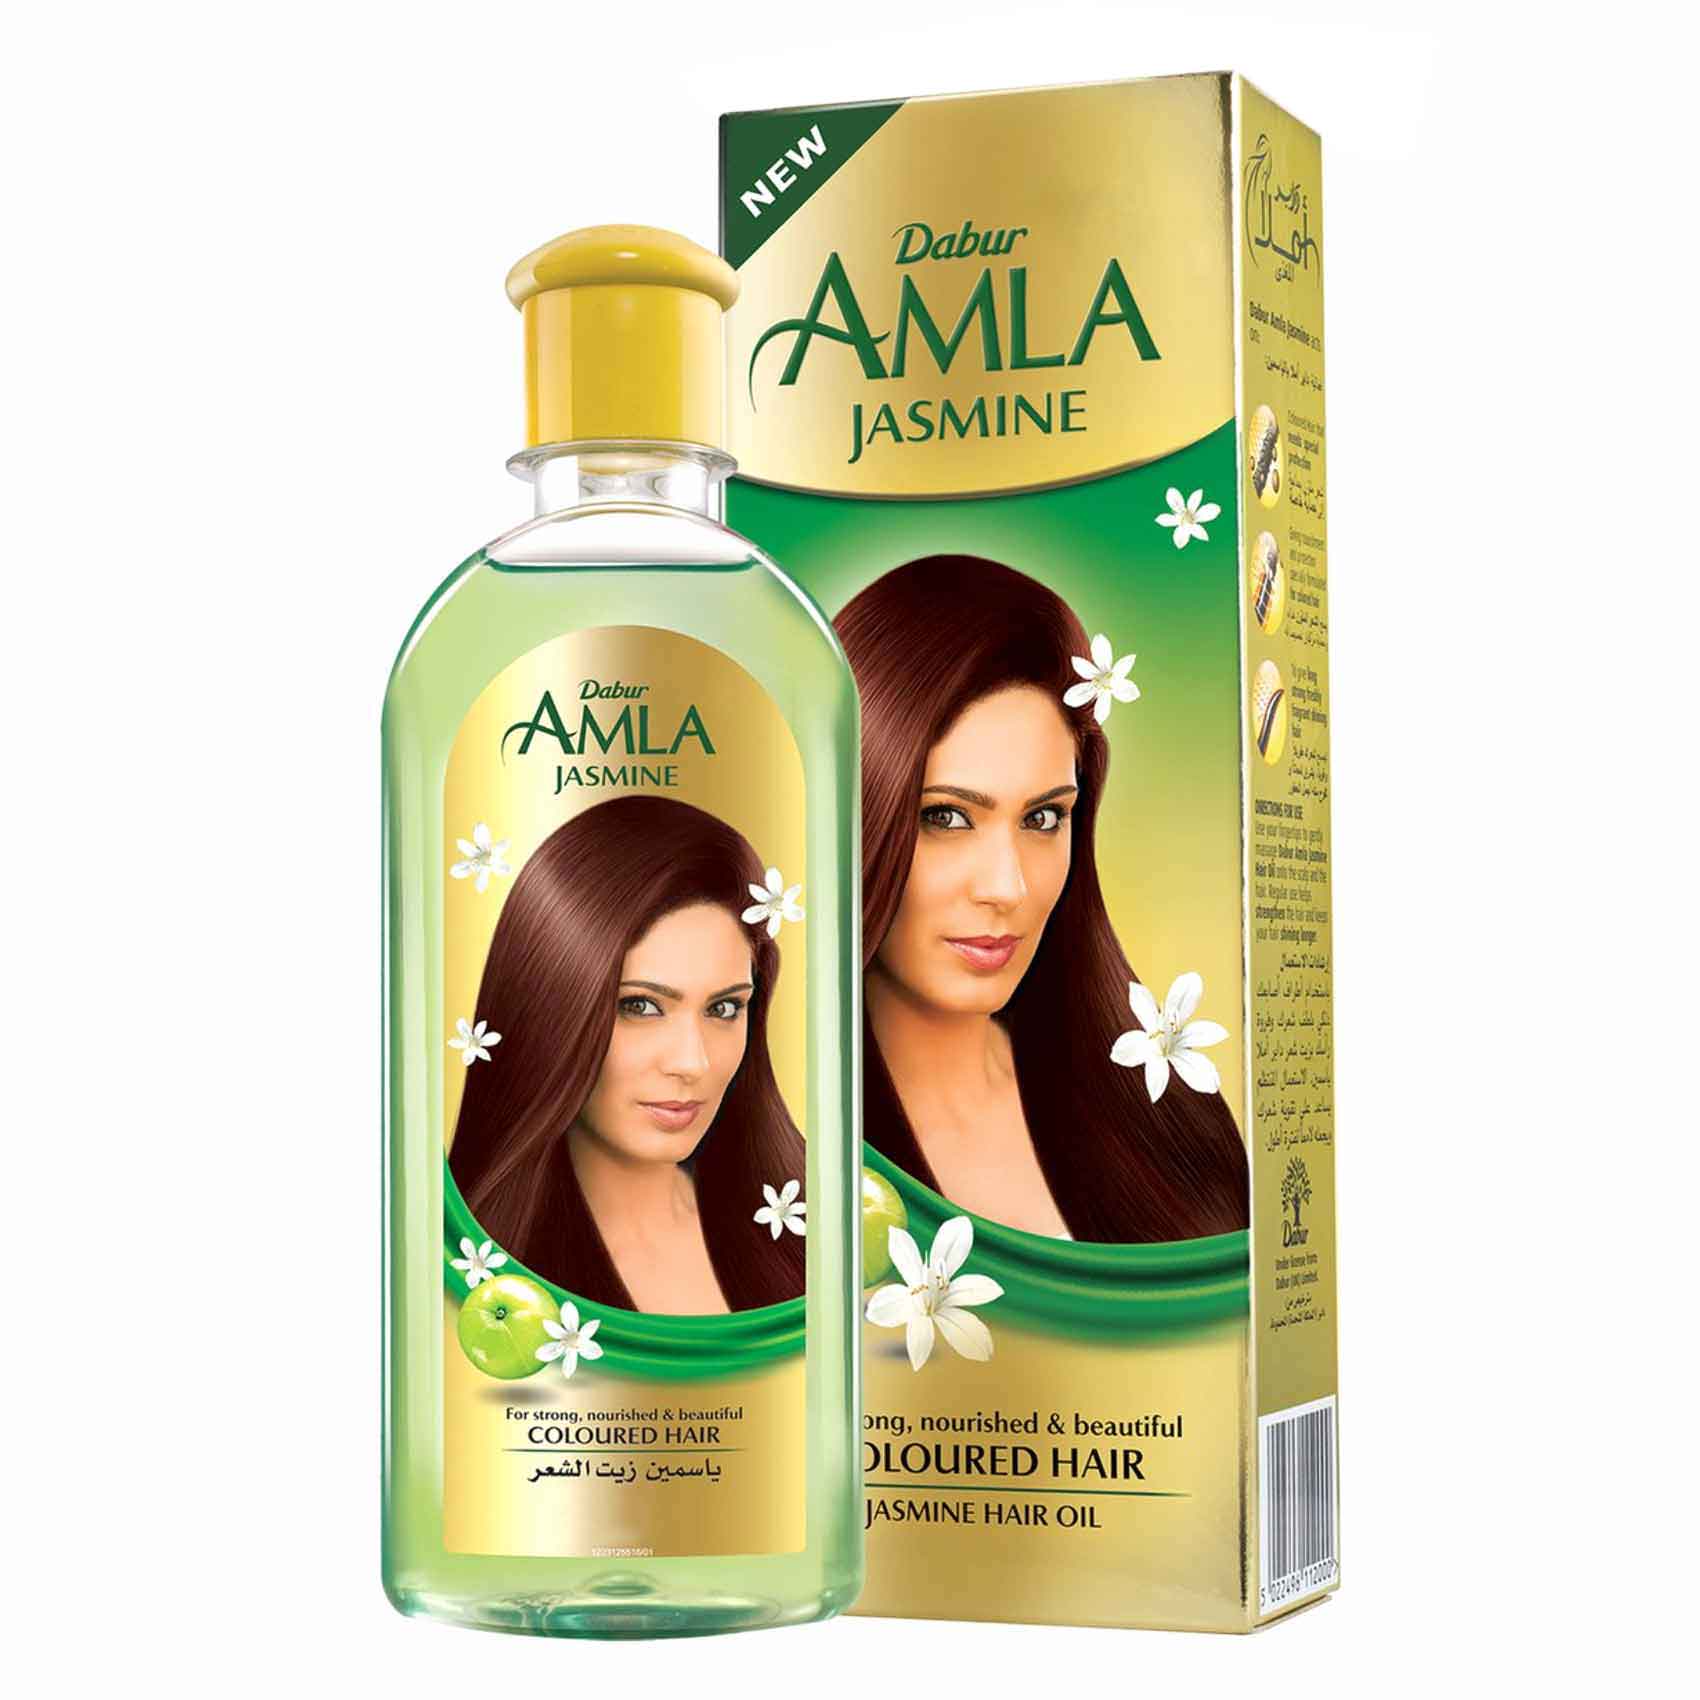 Dabur AMLa Jasmine Hair Oil 200ML